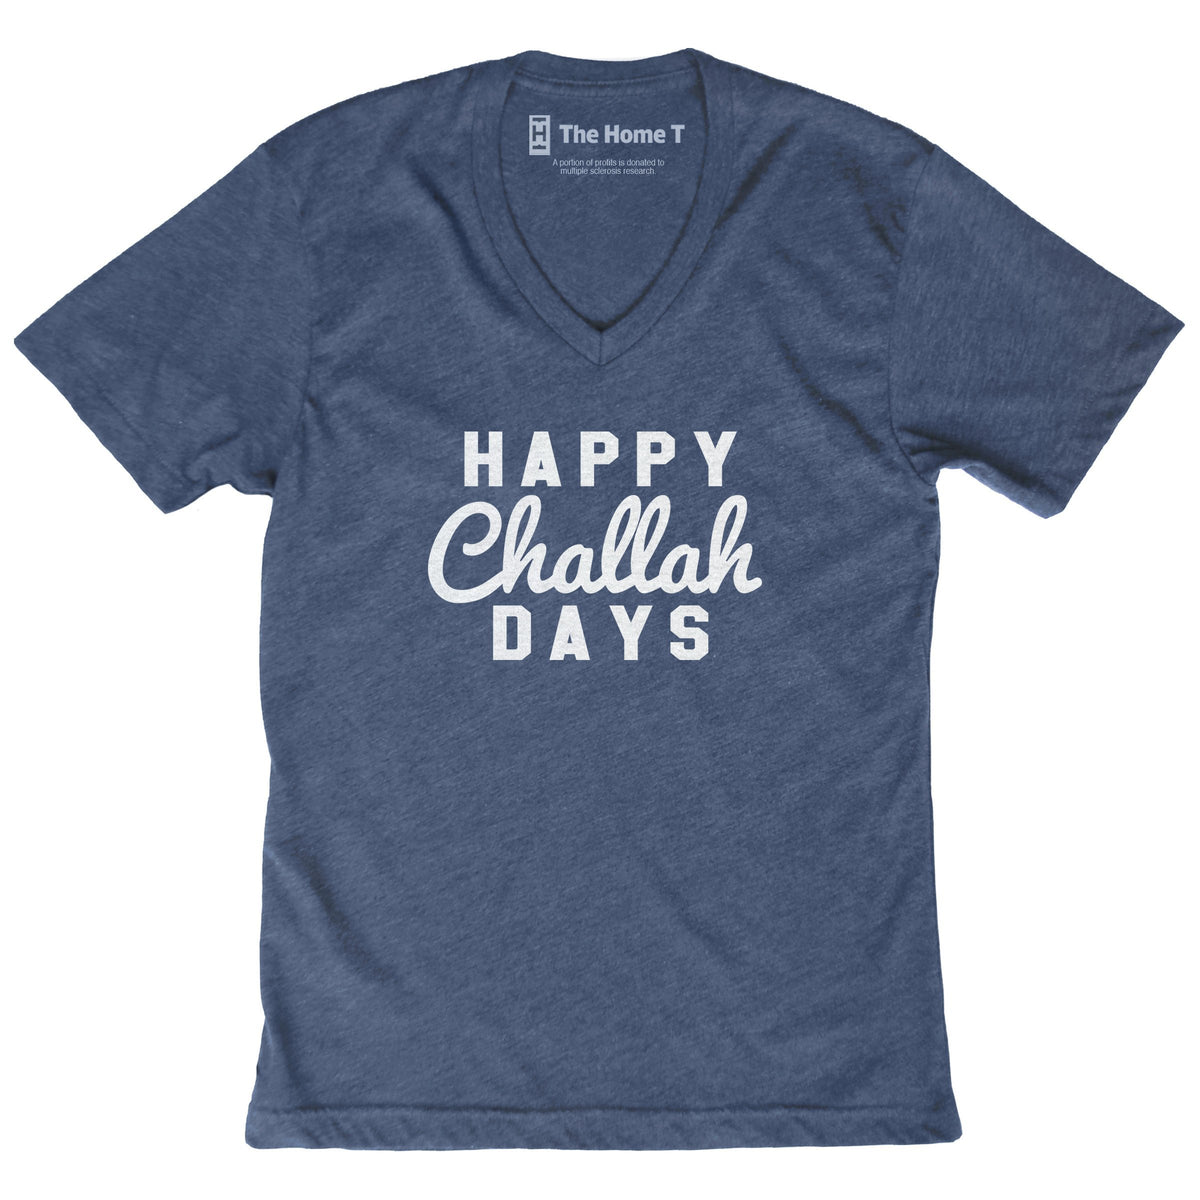 Happy Challah Days V-neck